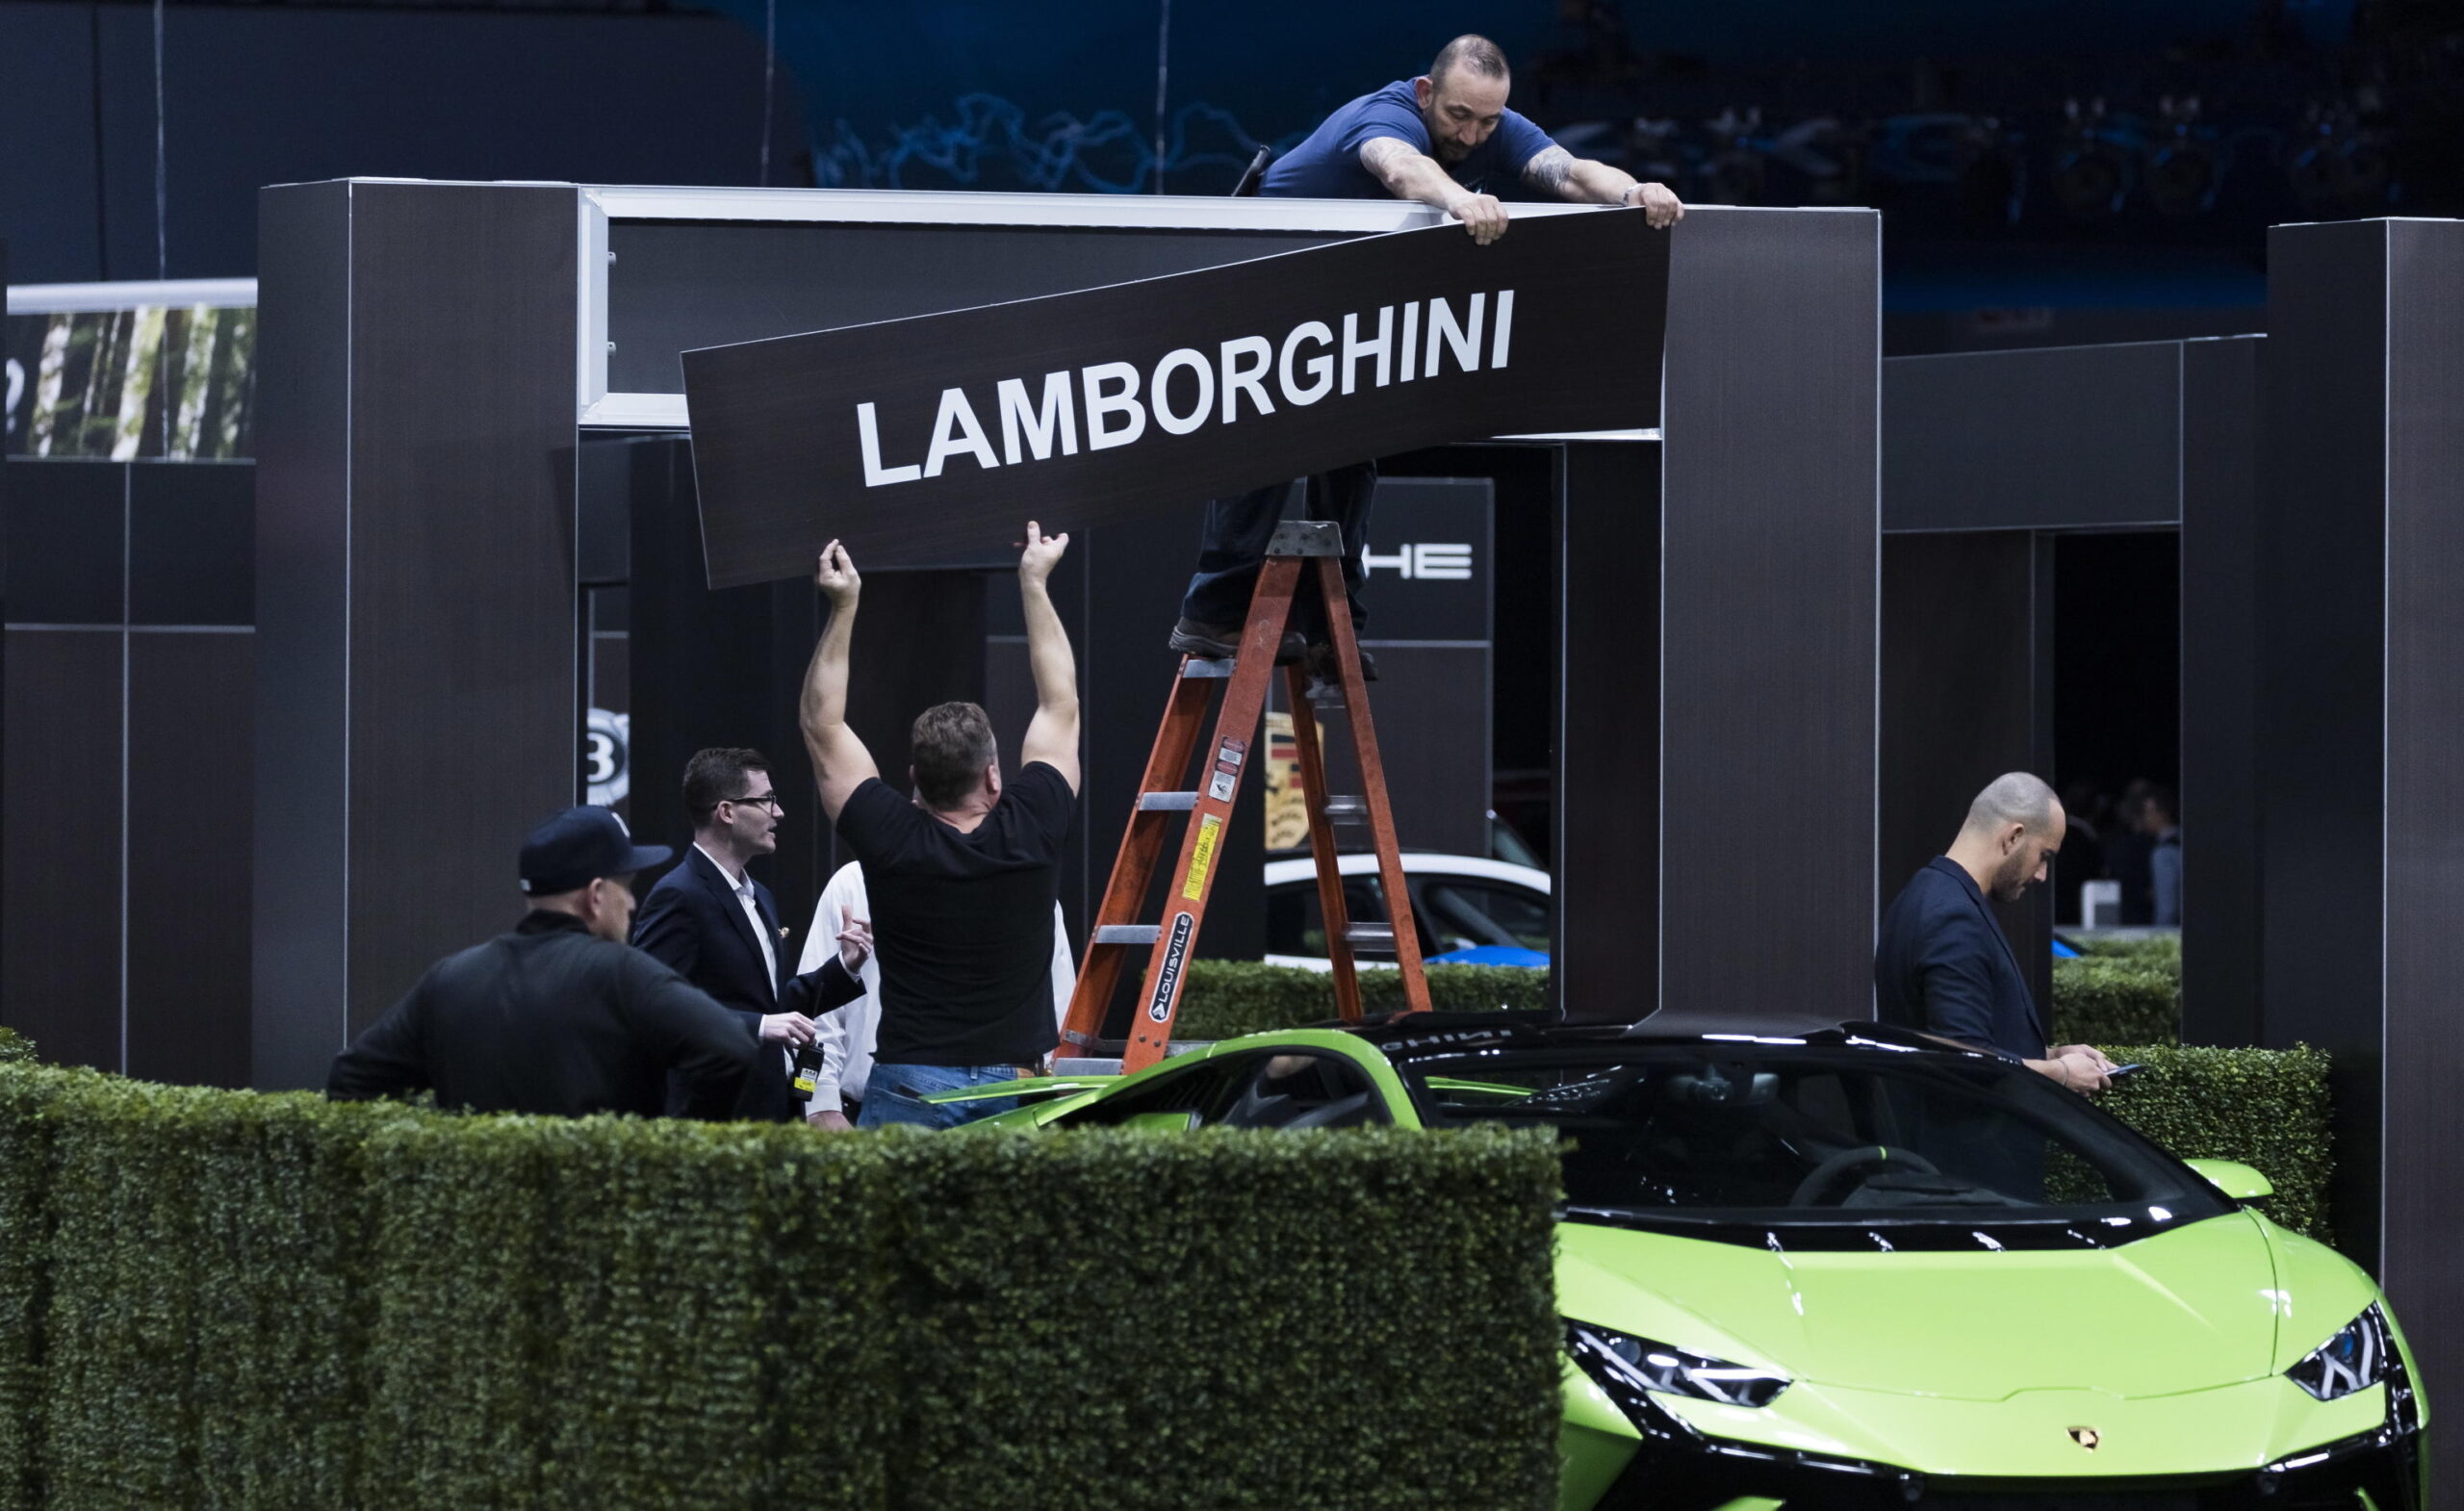  Anche-Lamborghini-apre-alla-settimana-corta-per-gli-operai-l-accordo-su-meno-ore-di-lavoro-e-aumenti